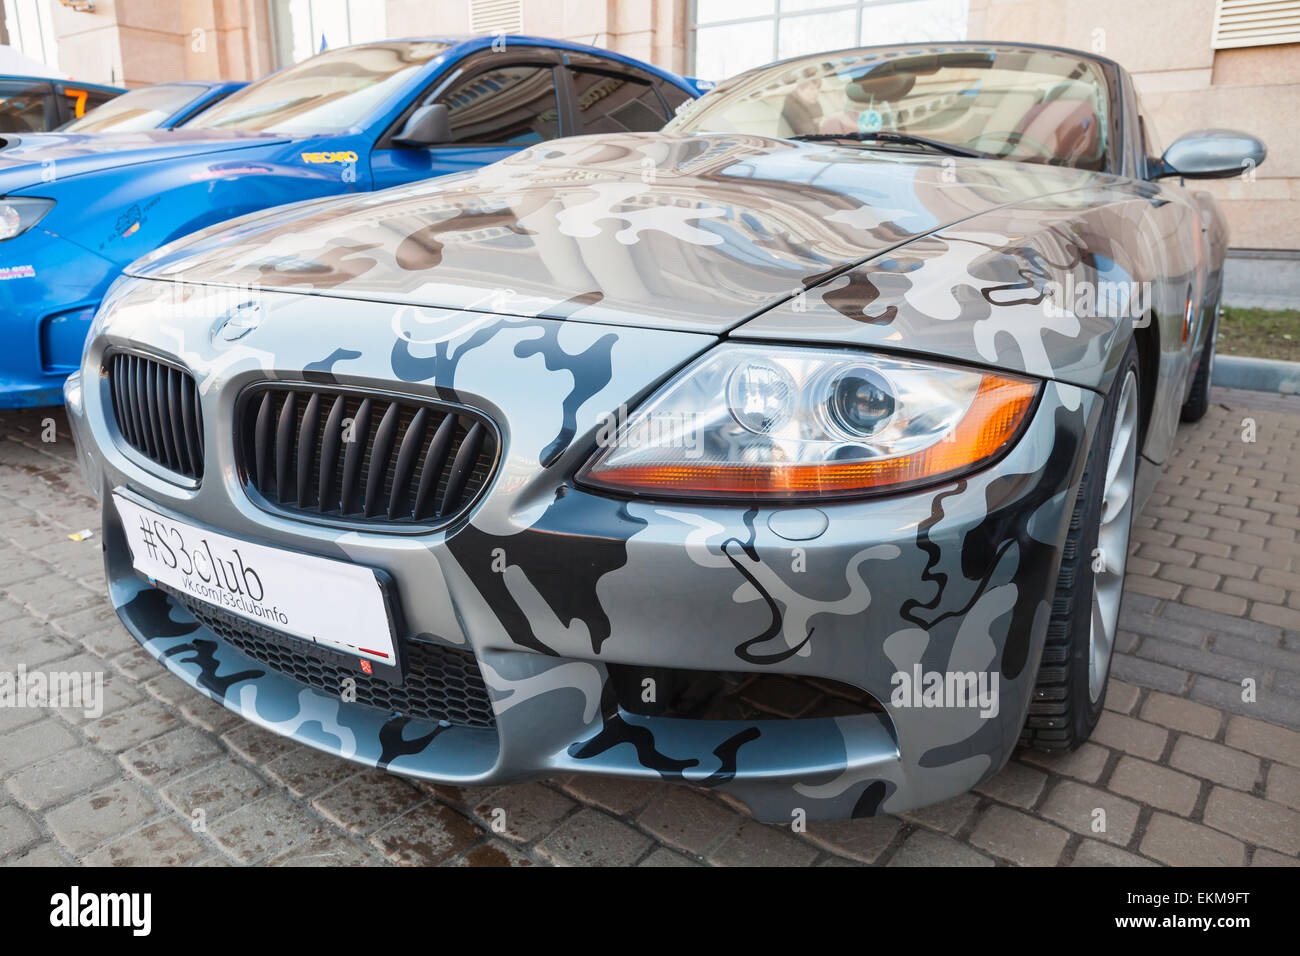 Saint-pétersbourg, Russie - le 11 avril 2015 : BMW Z4 roadster voiture avec des couleurs de camouflage est garée dans la rue Banque D'Images